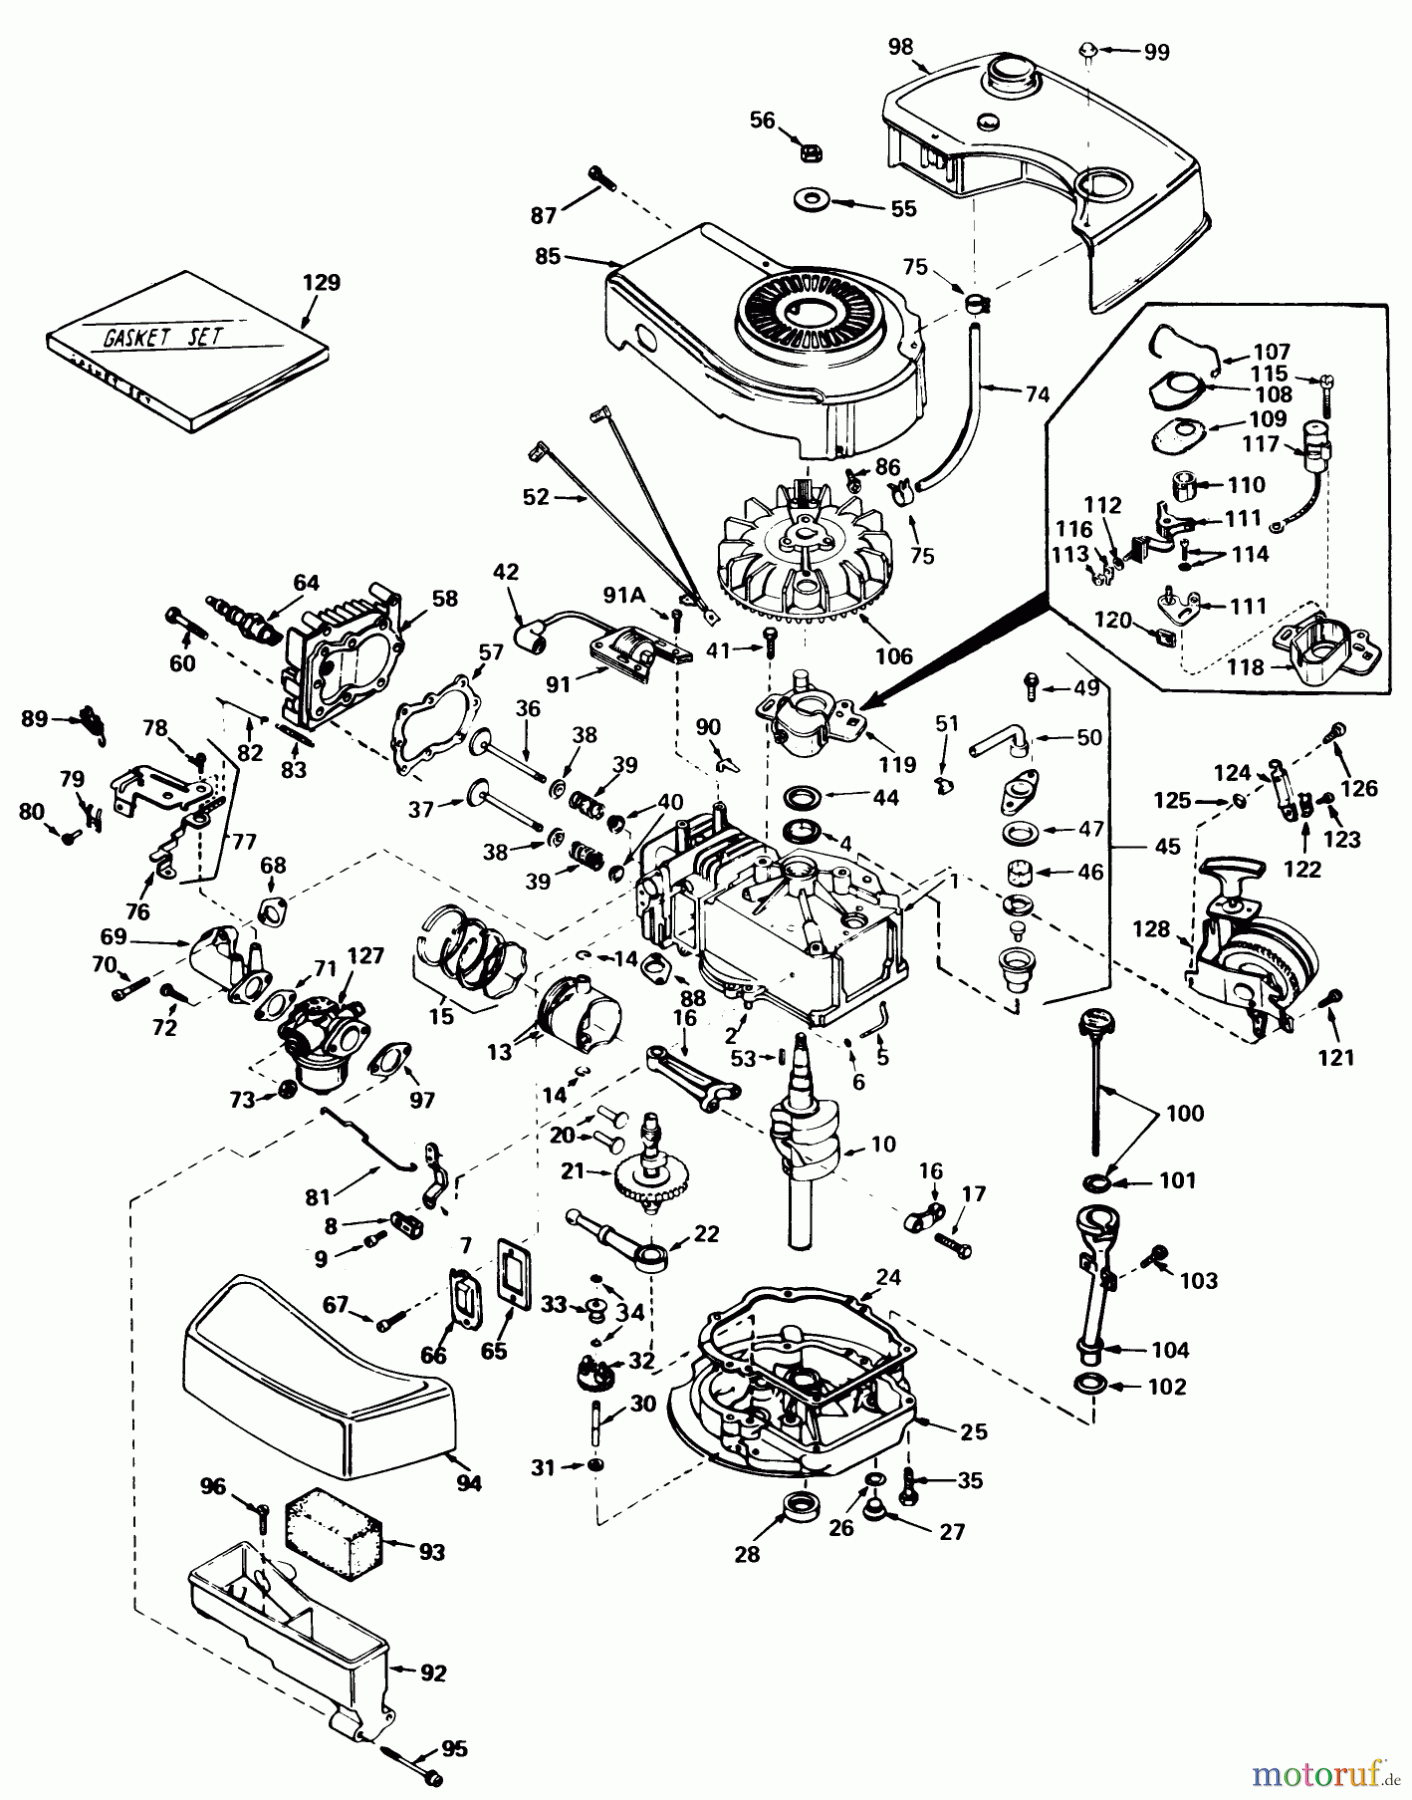  Toro Neu Mowers, Walk-Behind Seite 1 20810 - Toro Lawnmower, 1979 (9000001-9999999) ENGINE TECUMSEH MODEL NO. TNT 100-10063C